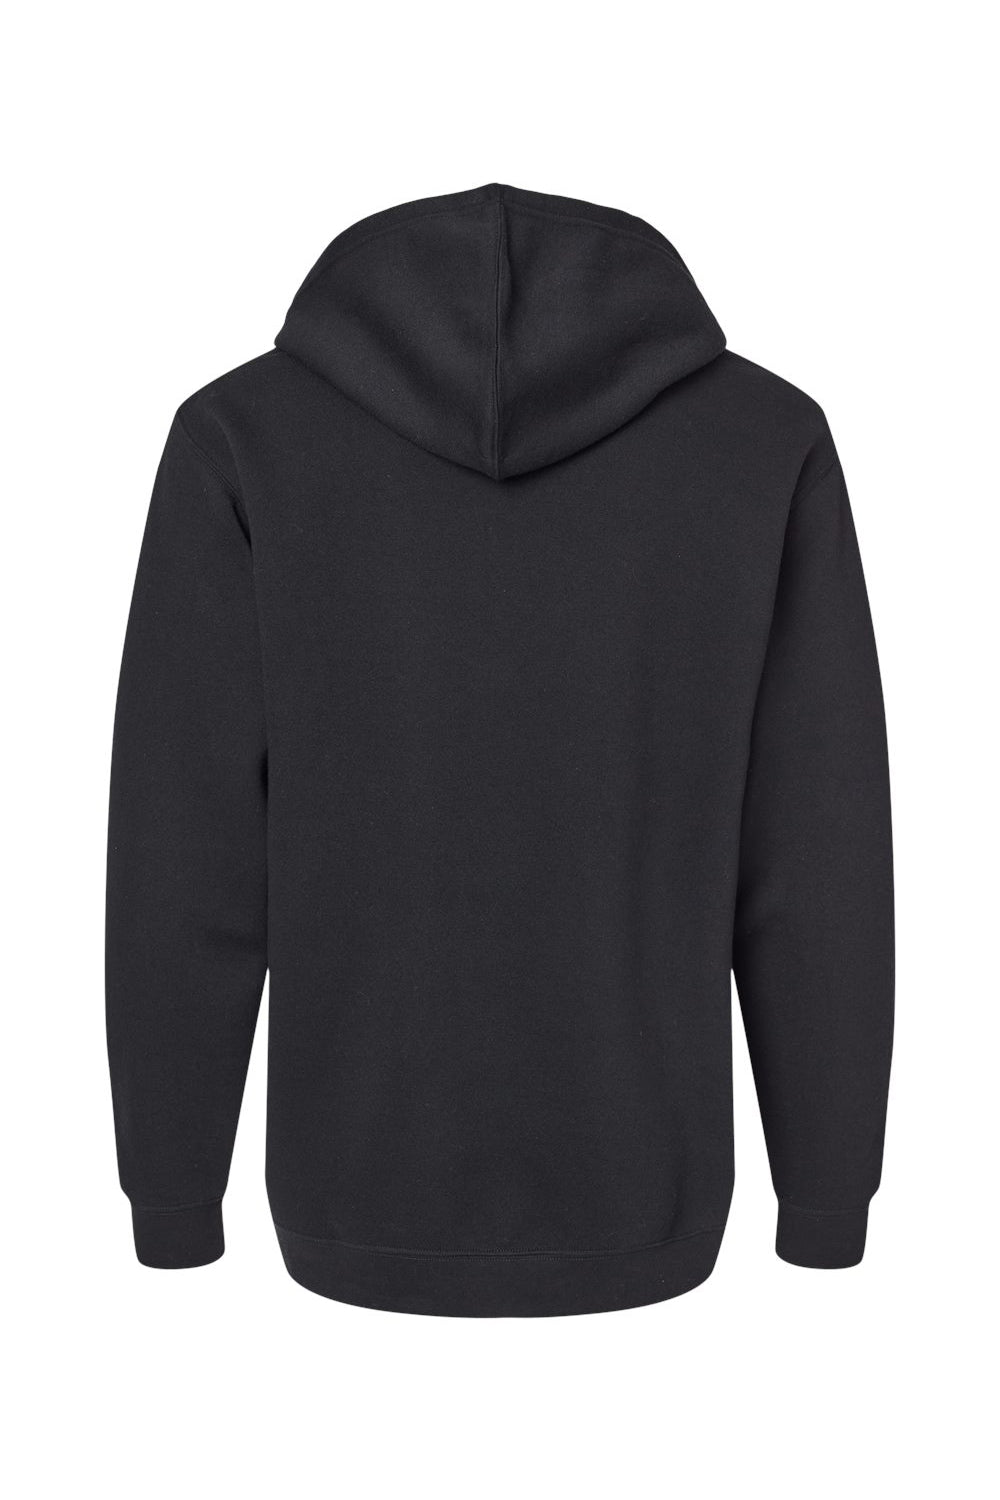 LAT 6926 Mens Elevated Fleece Basic Hooded Sweatshirt Hoodie Black Flat Back